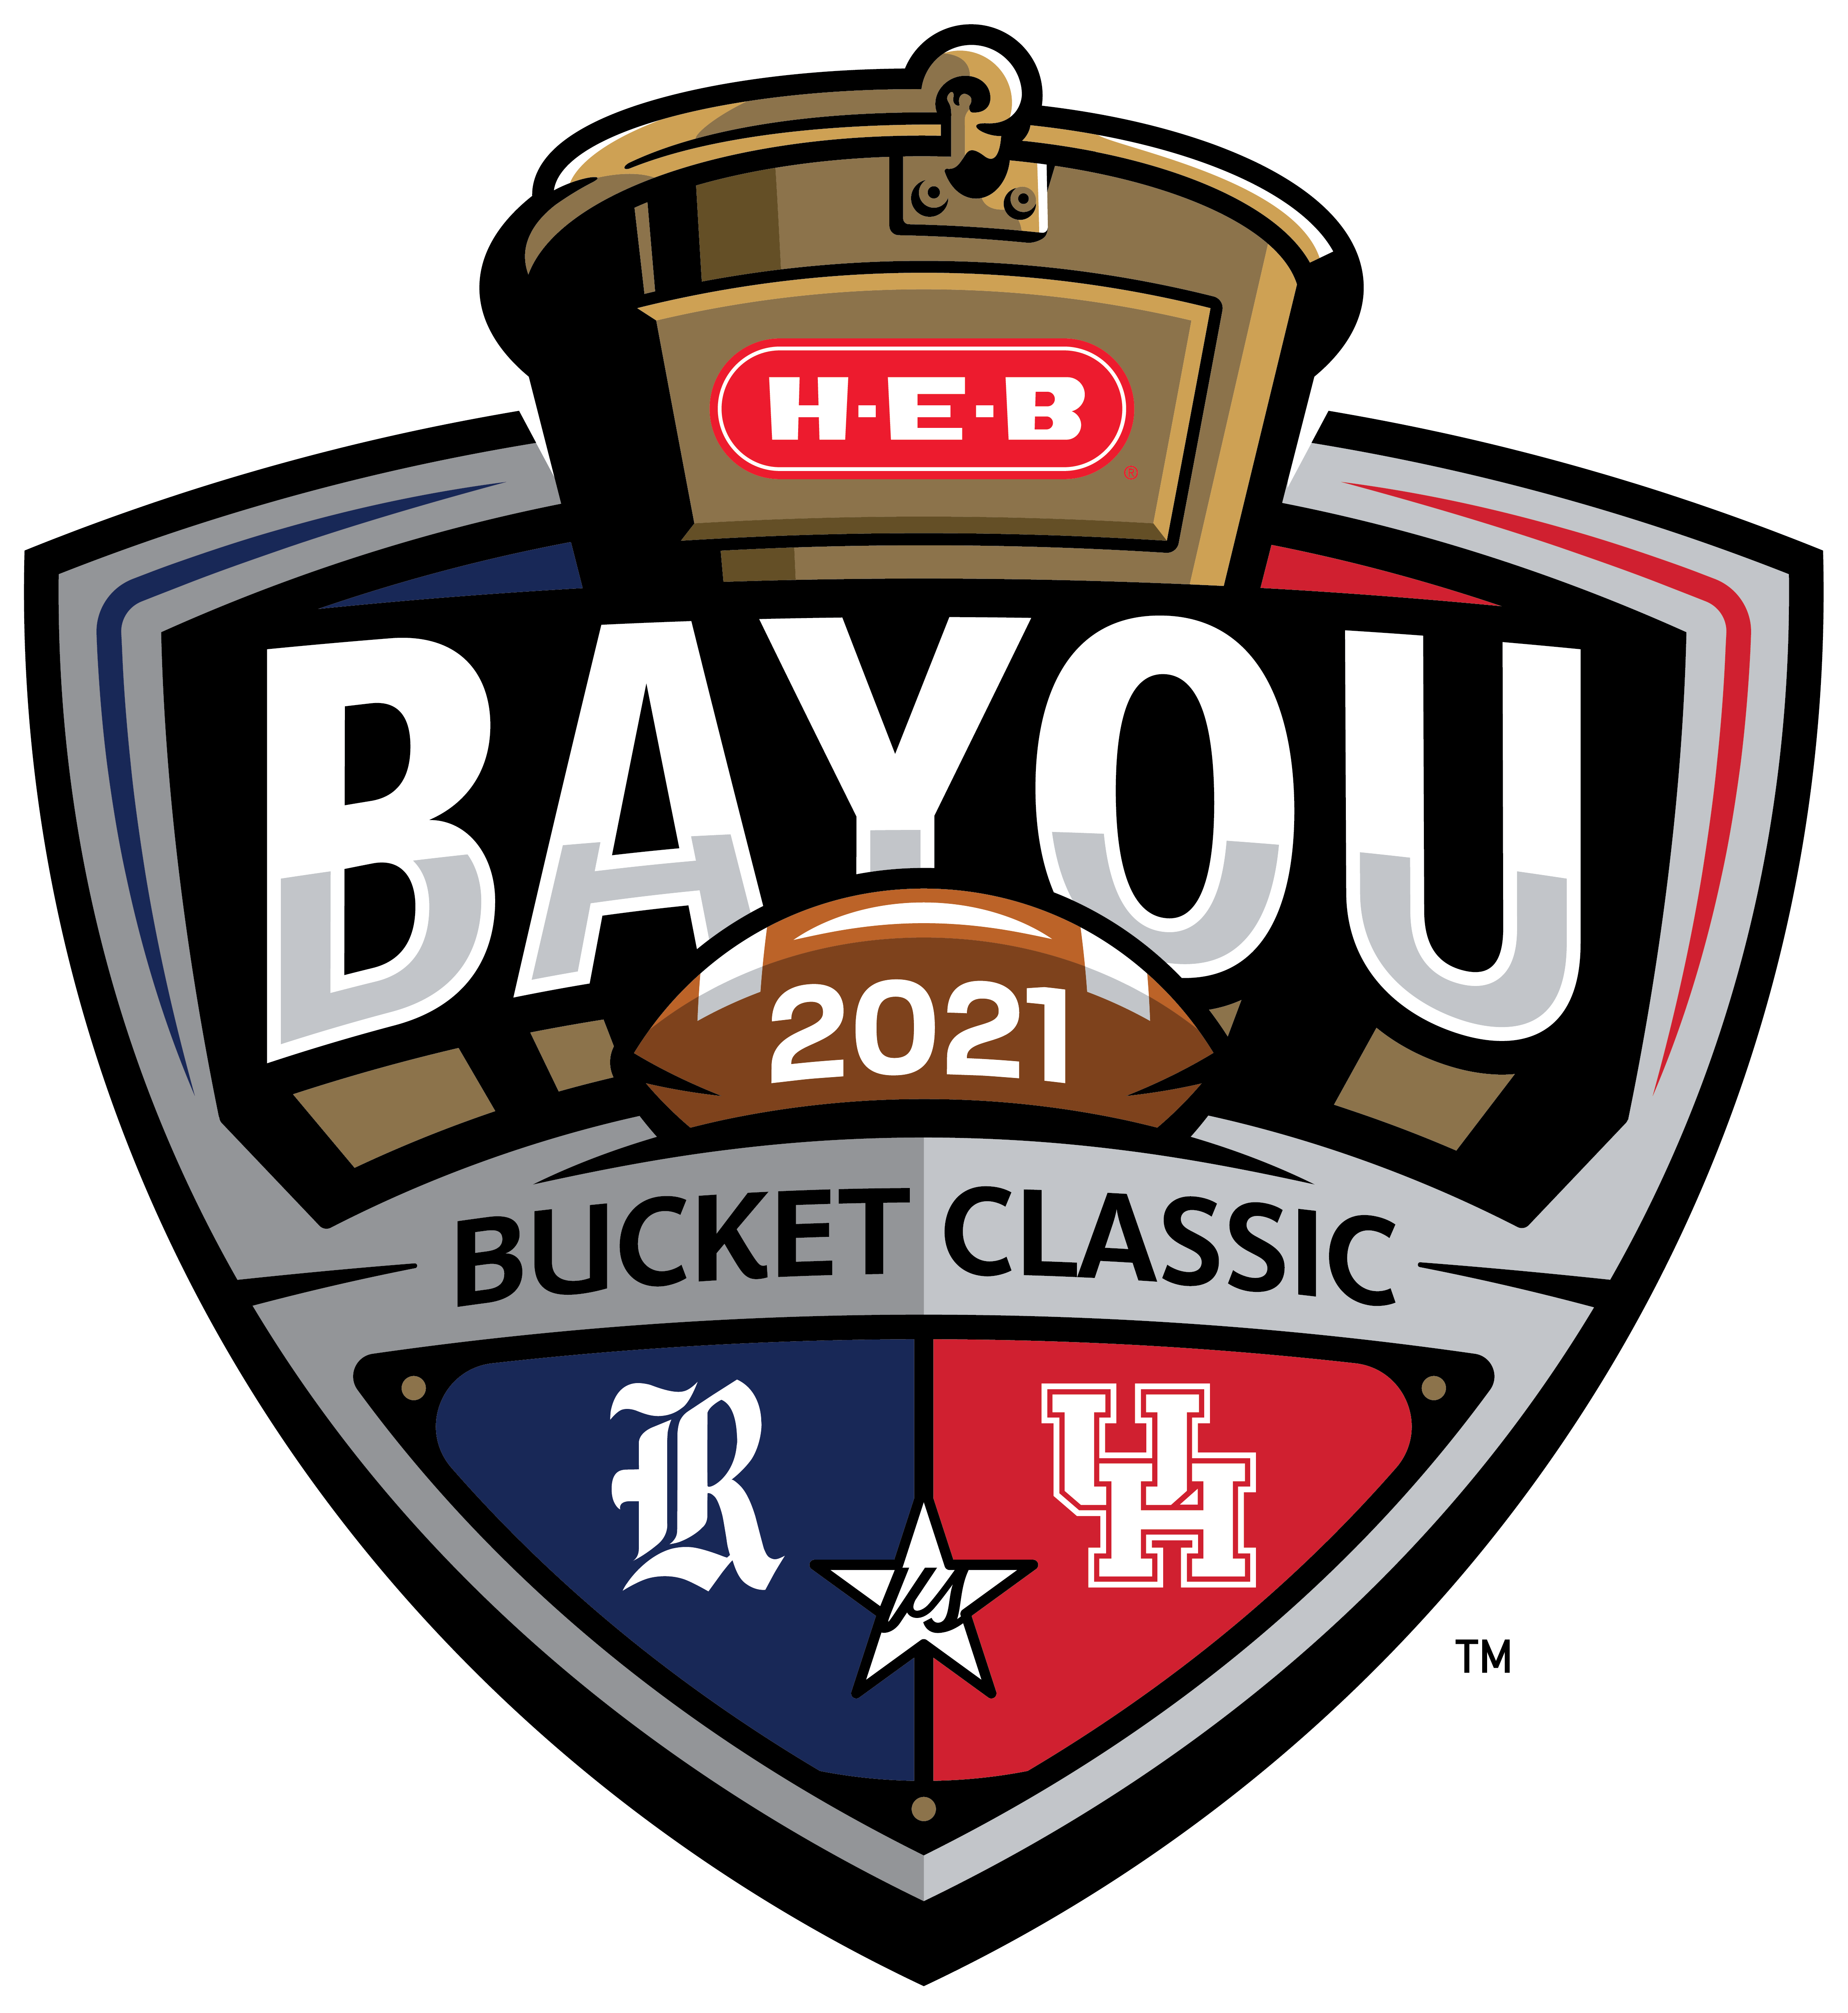 Image of the Bayou Bucket Challenge logo for 2021